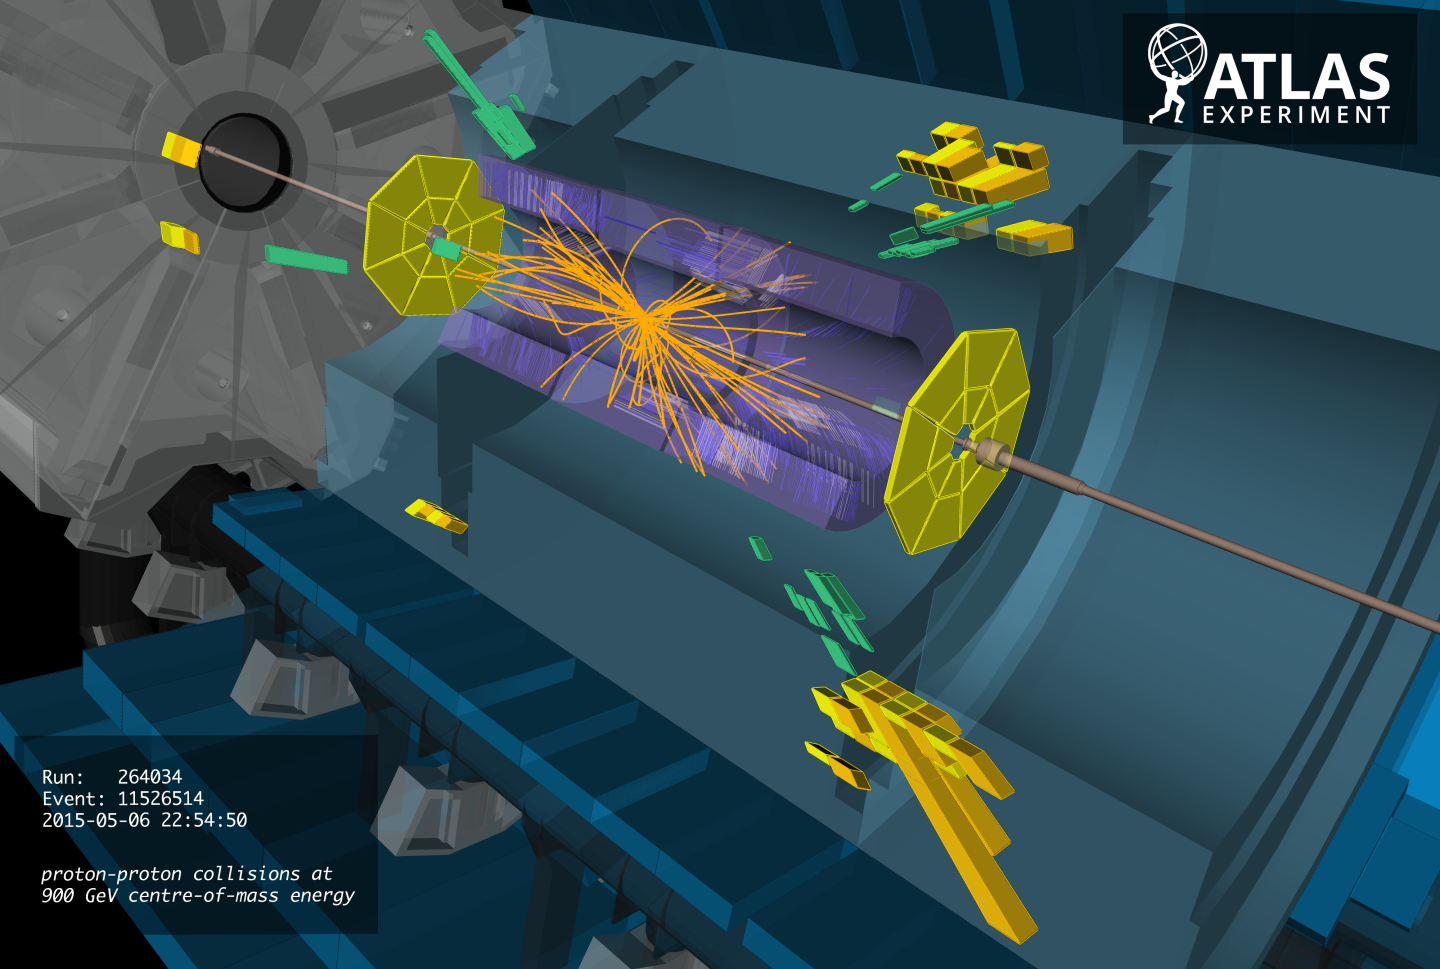 Le 6 mai 2015, des collisions de protons se sont à nouveau produites dans le détecteur Atlas du LHC. Les trajectoires des nouvelles particules chargées issues des collisions à 0,9 TeV ont été reconstituées par les ordinateurs (en orange sur l'image). Elles sont courbées par des champs magnétiques. Les énergies déposées sont indiquées en vert et jaune. © ATLAS Collaboration, Cern